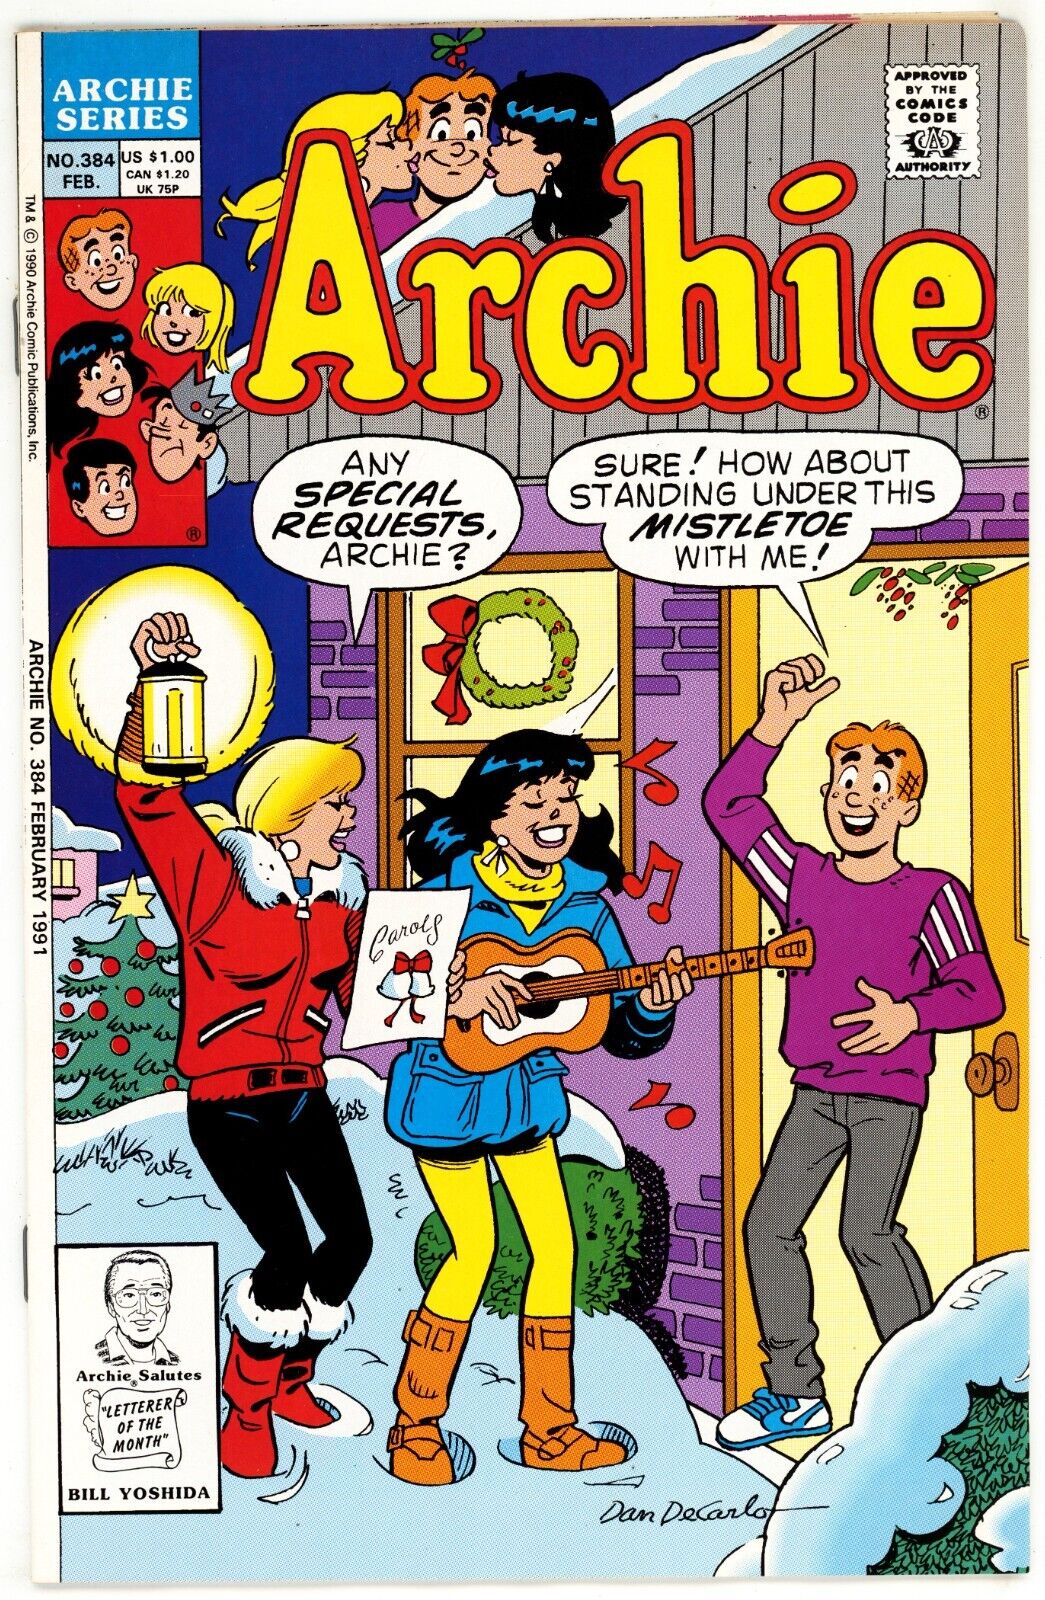 Archie (1943) #384 VF/NM 9.0 Dan DeCarlo Cover